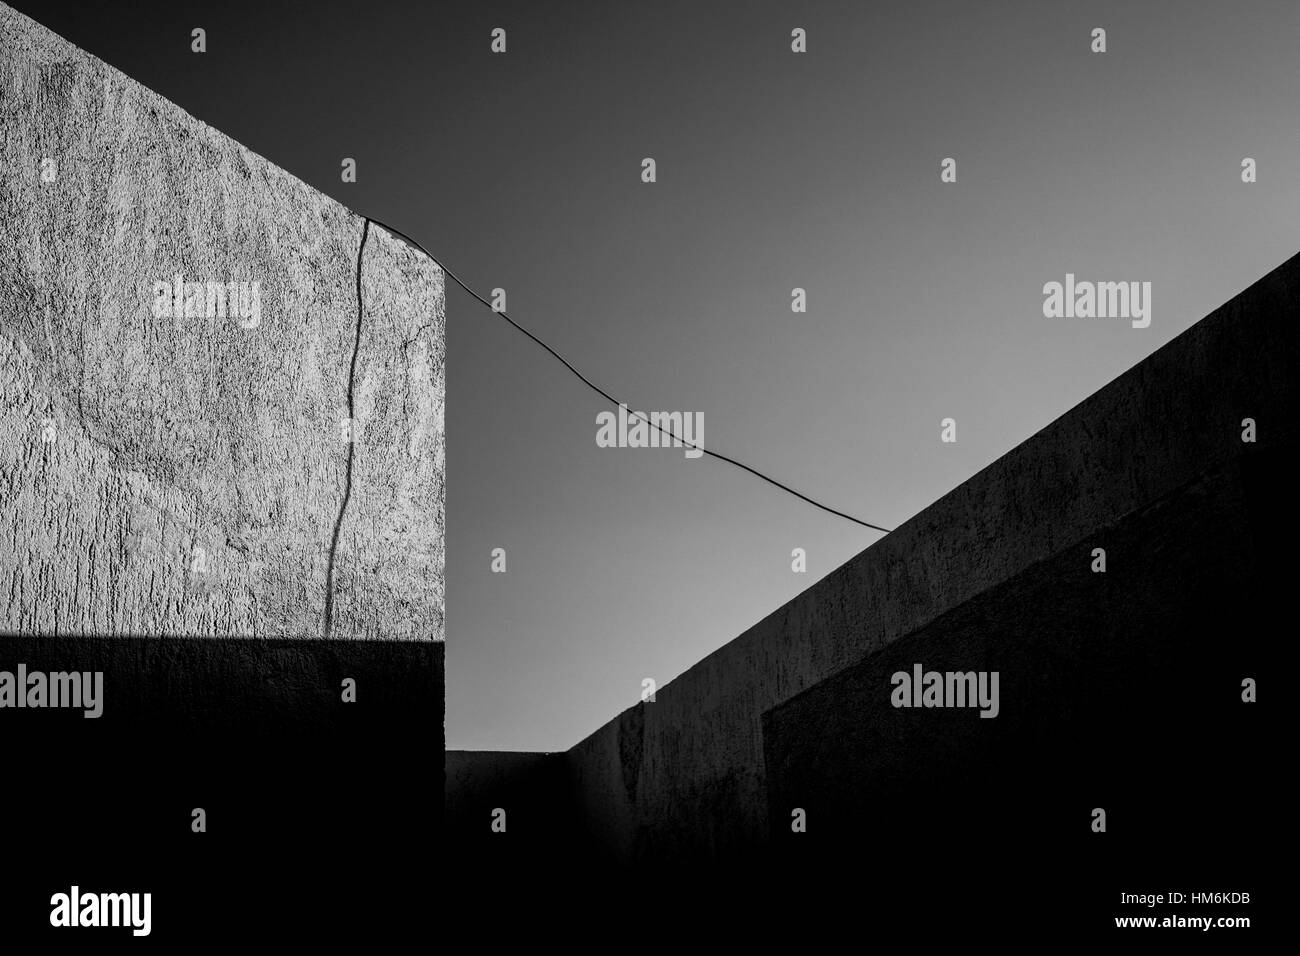 Architektur, Wand, weiß / schwarz mit Kabel Stockfoto